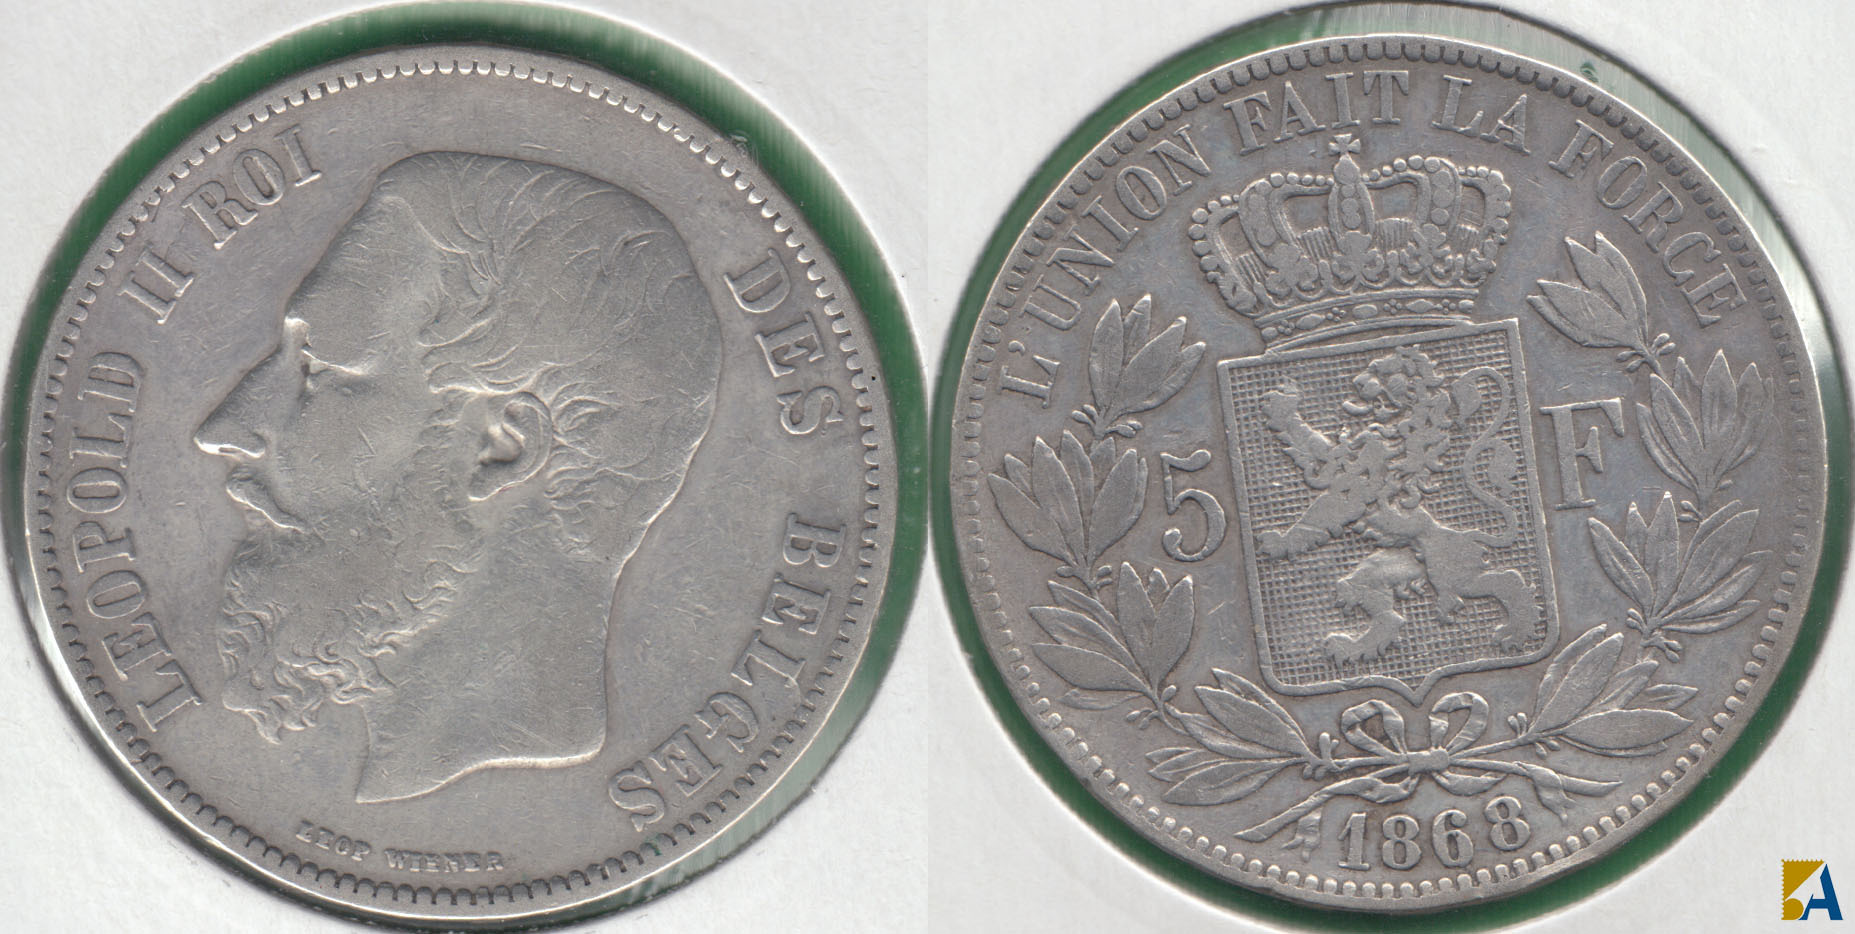 BELGICA - BELGIUM. 5 FRANCOS (FRANCS) DE 1868. PLATA 0.900. (4)